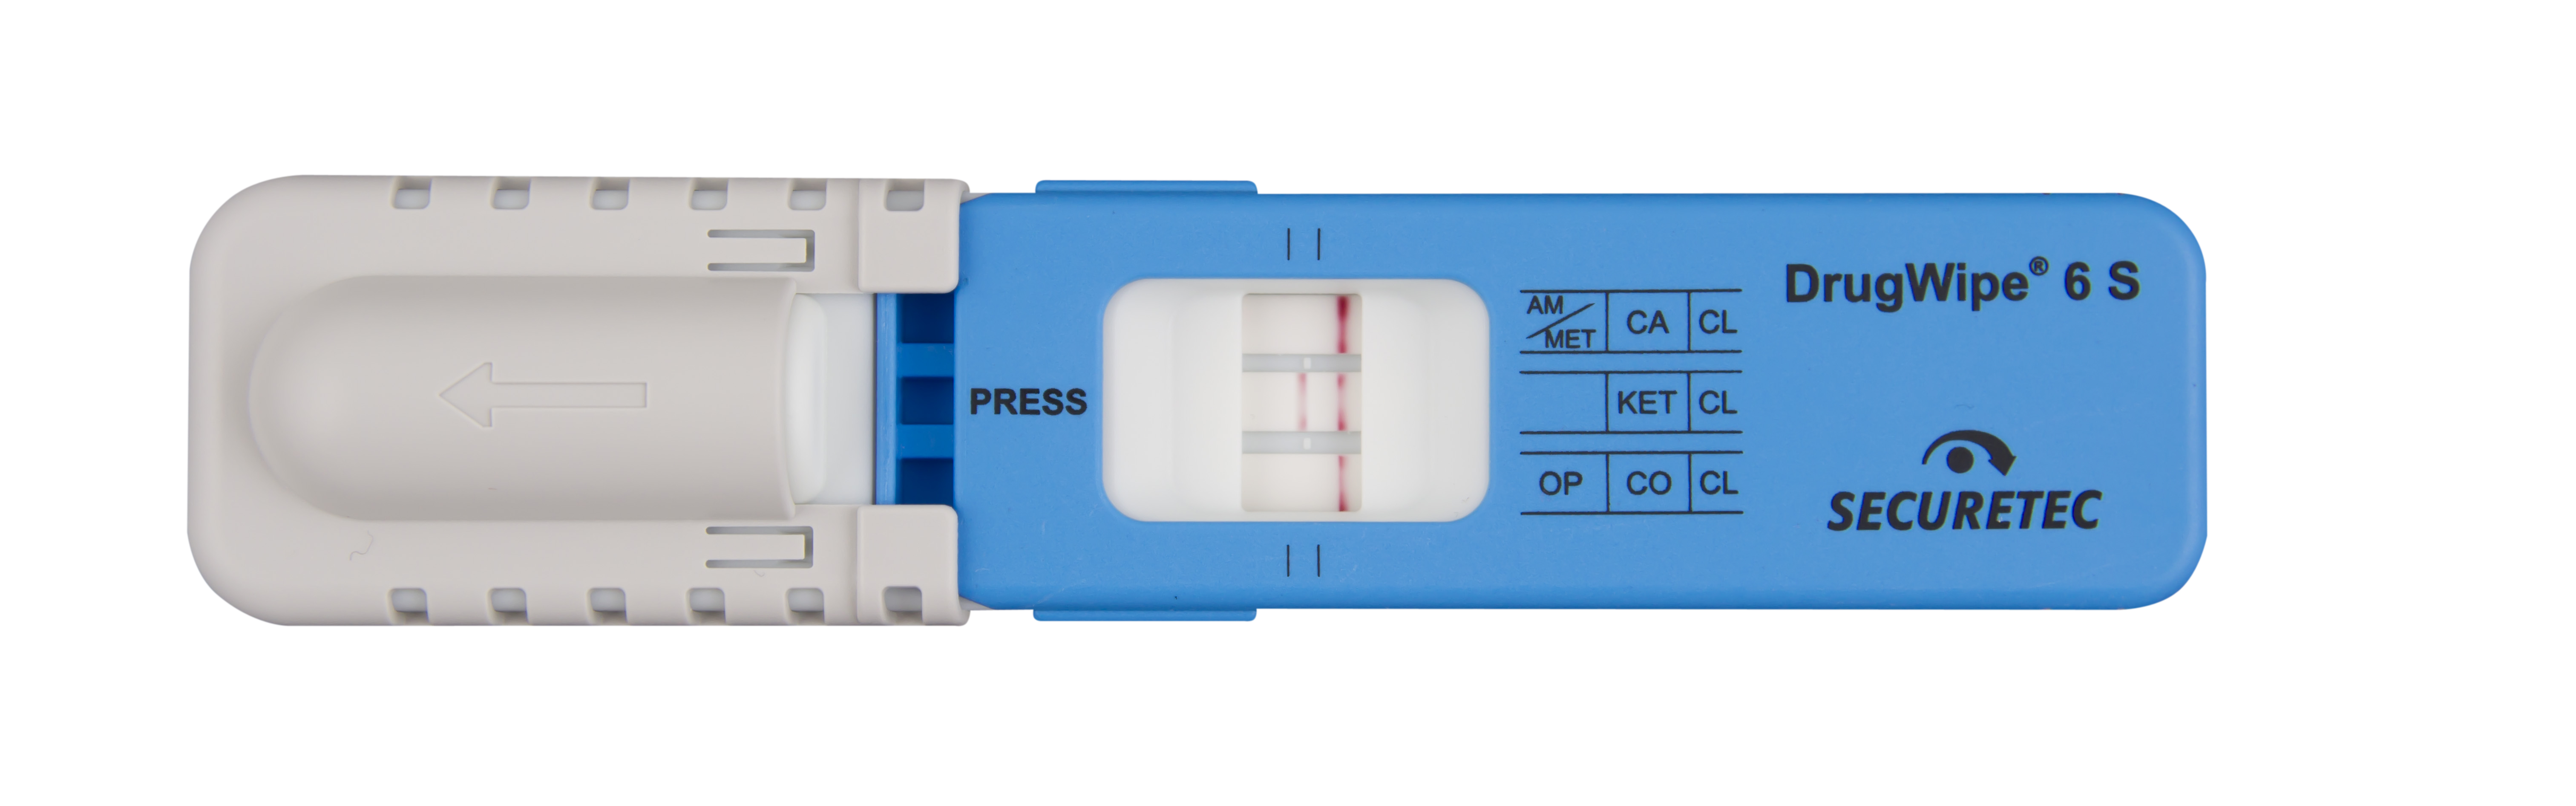 Drogotest prueba de consumo de drogas 6 en 1 en orina